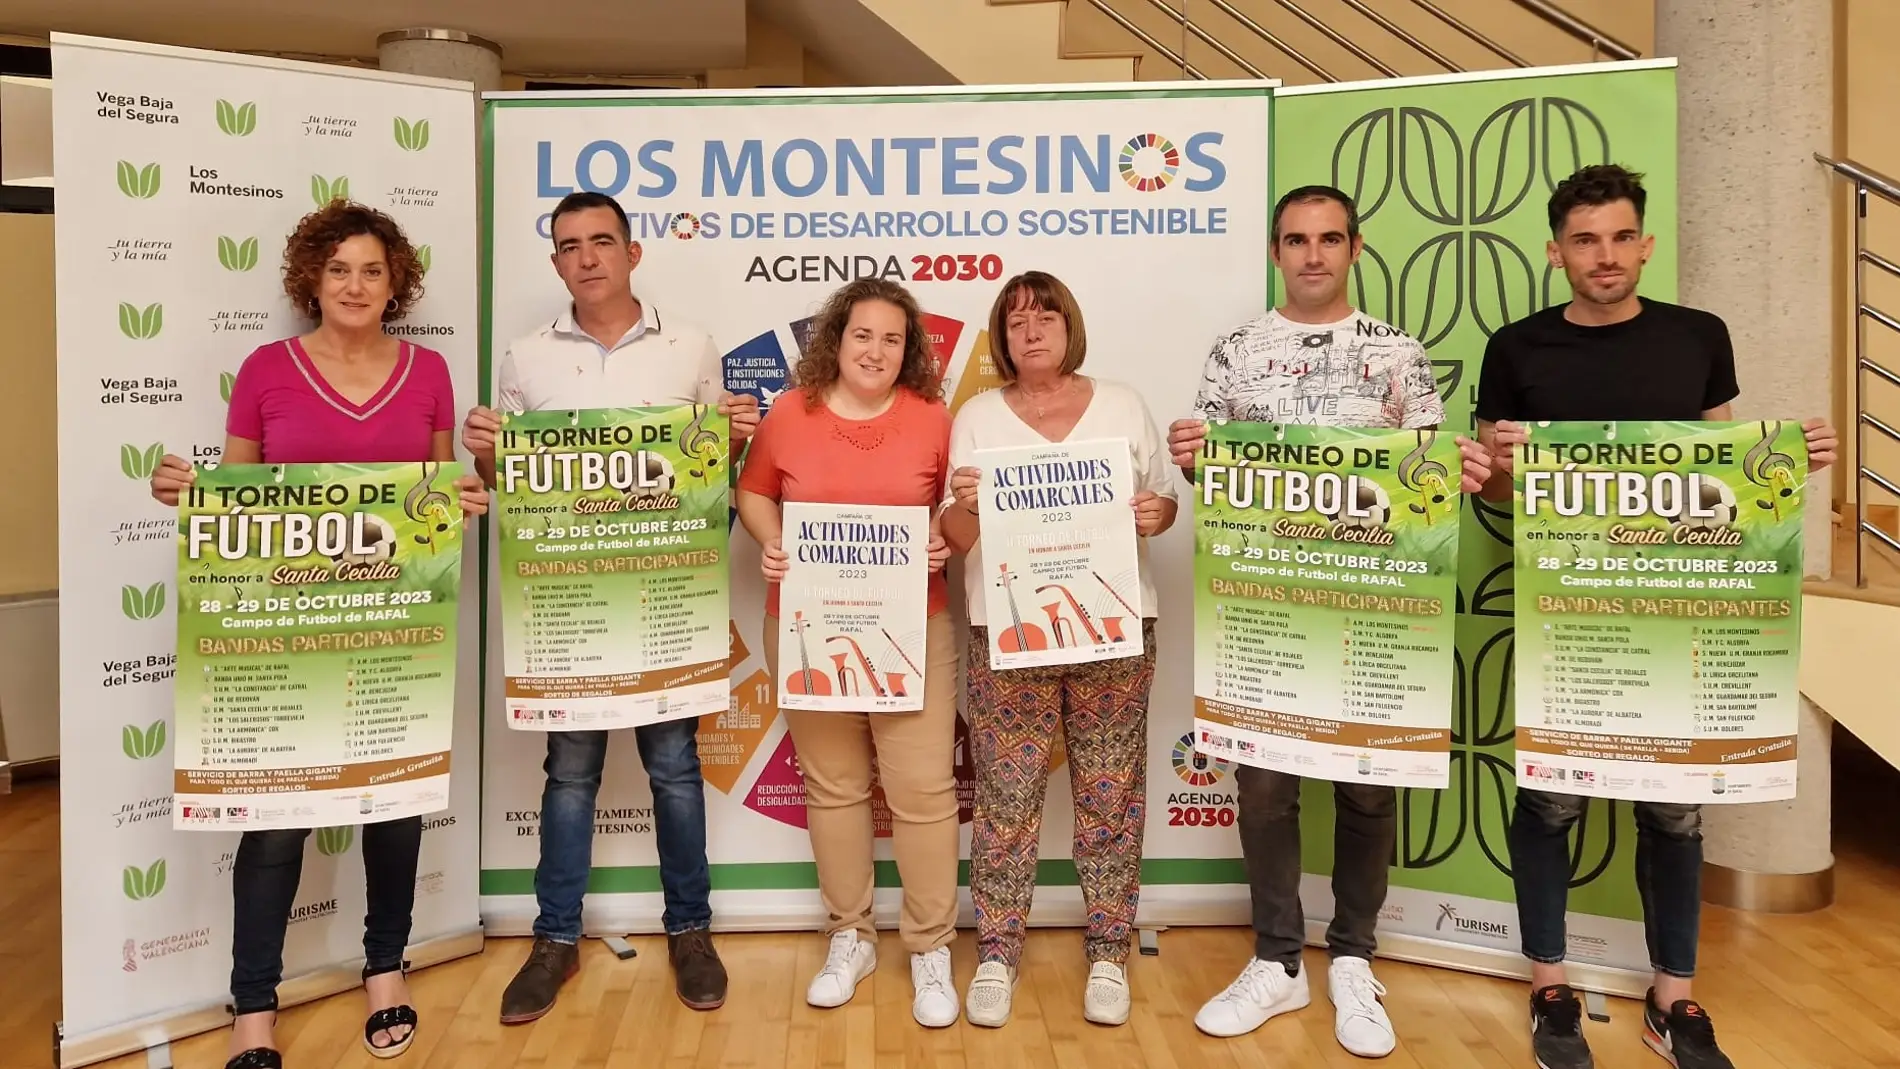 Los Montesinos presentan el II torneo de fútbol en honor a Santa Cecilia 